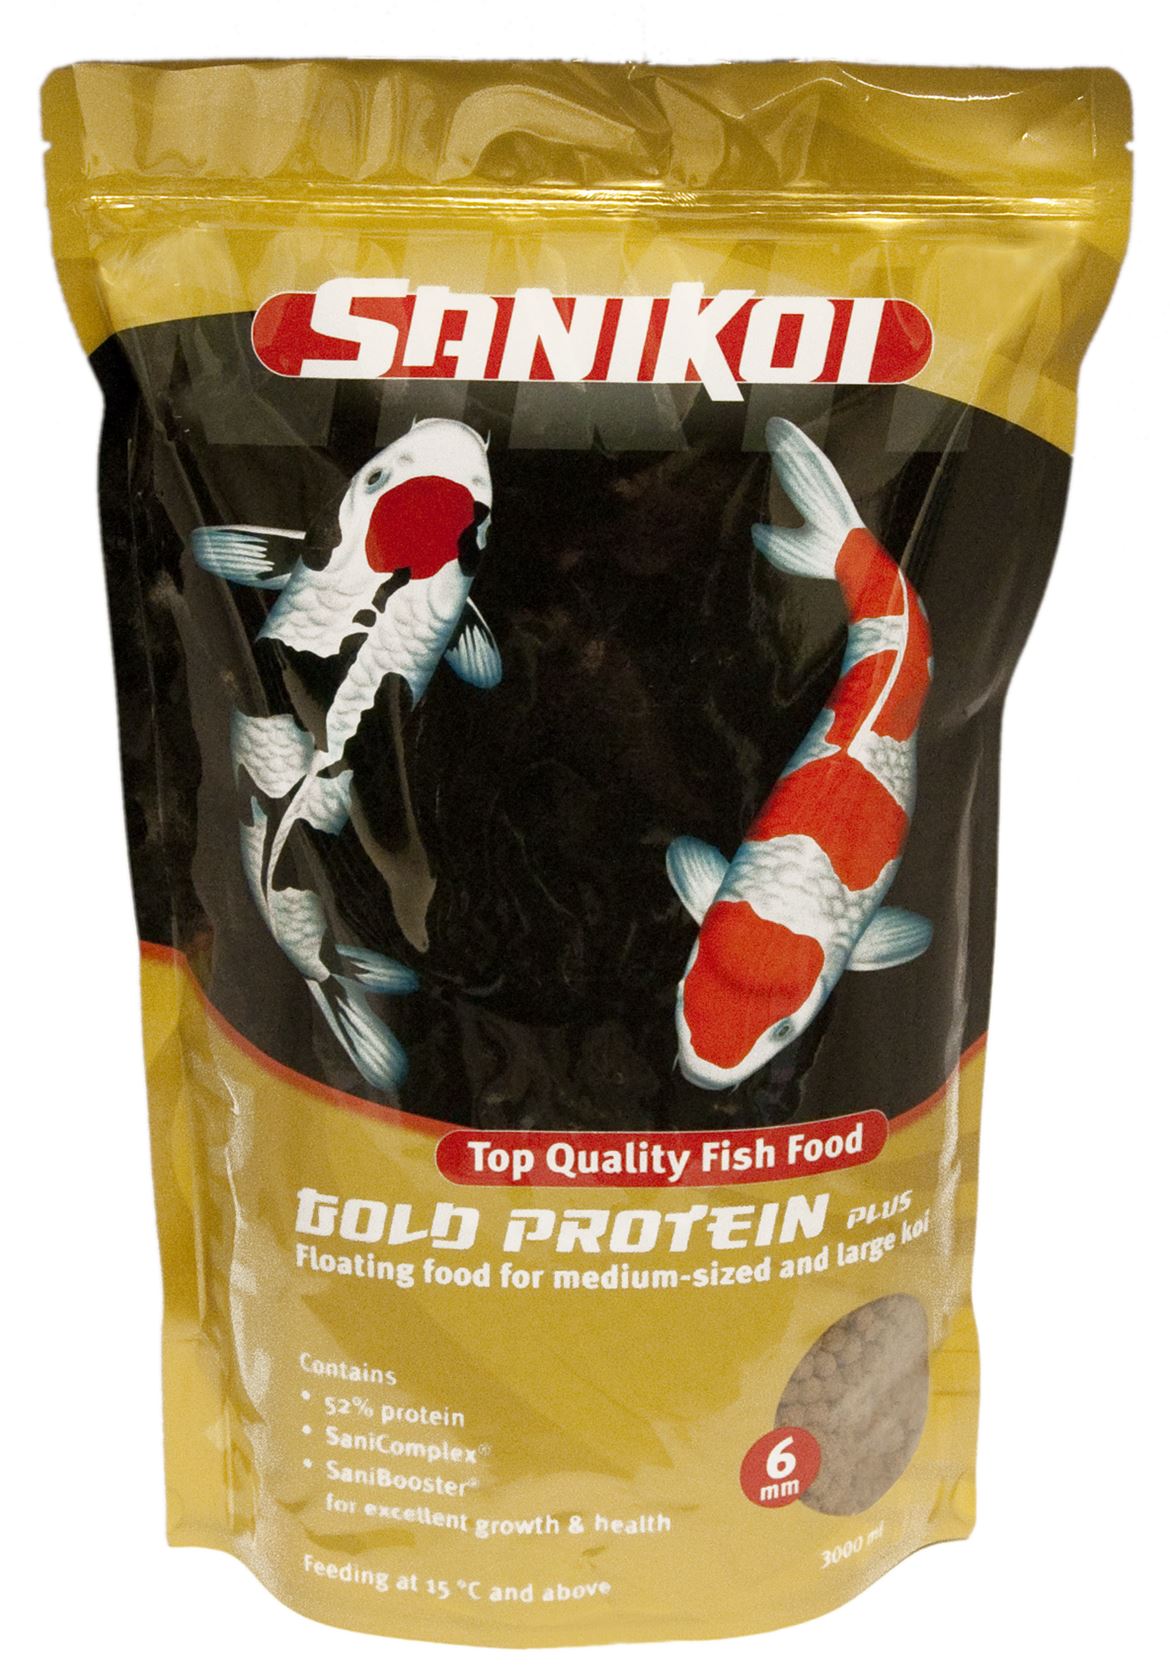 SaniKoi-Gold-Protein-Plus-6-mm-3-l-met-52-eiwit-voor-excellente-groei-en-gezondheid